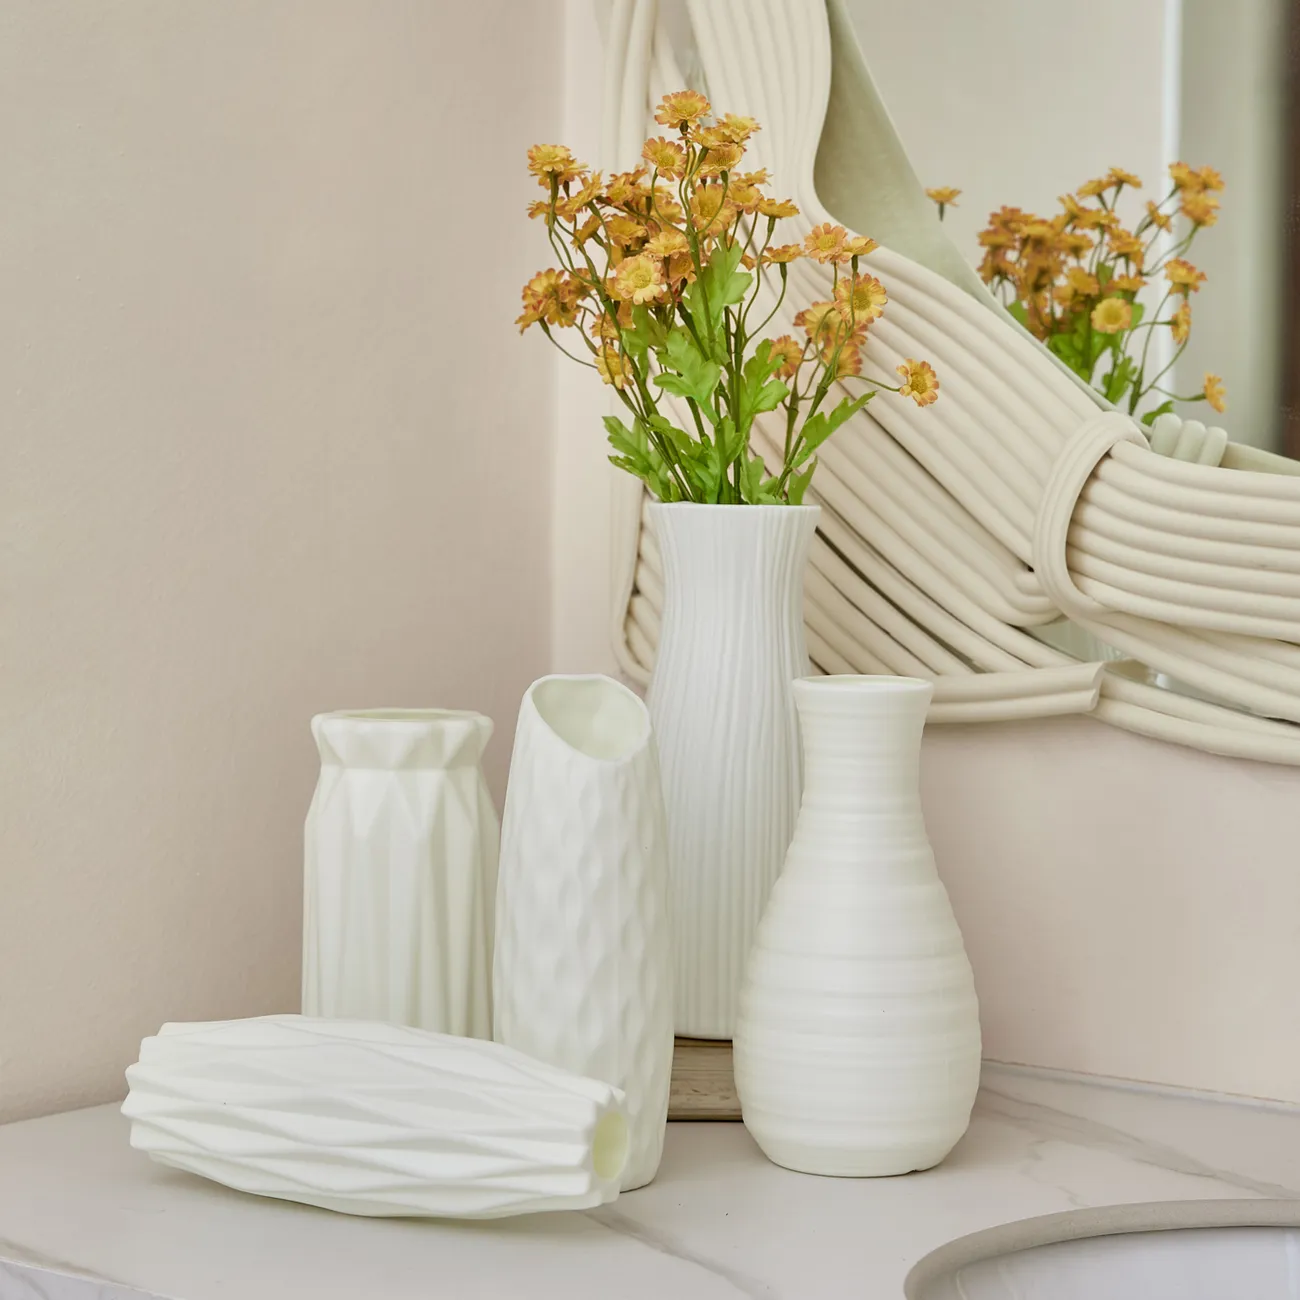 Ceramic Look White Plastic Flower Vase Geometric Style Unbreakable Decor Vase for Flower Home Office Table Decor White big image 1